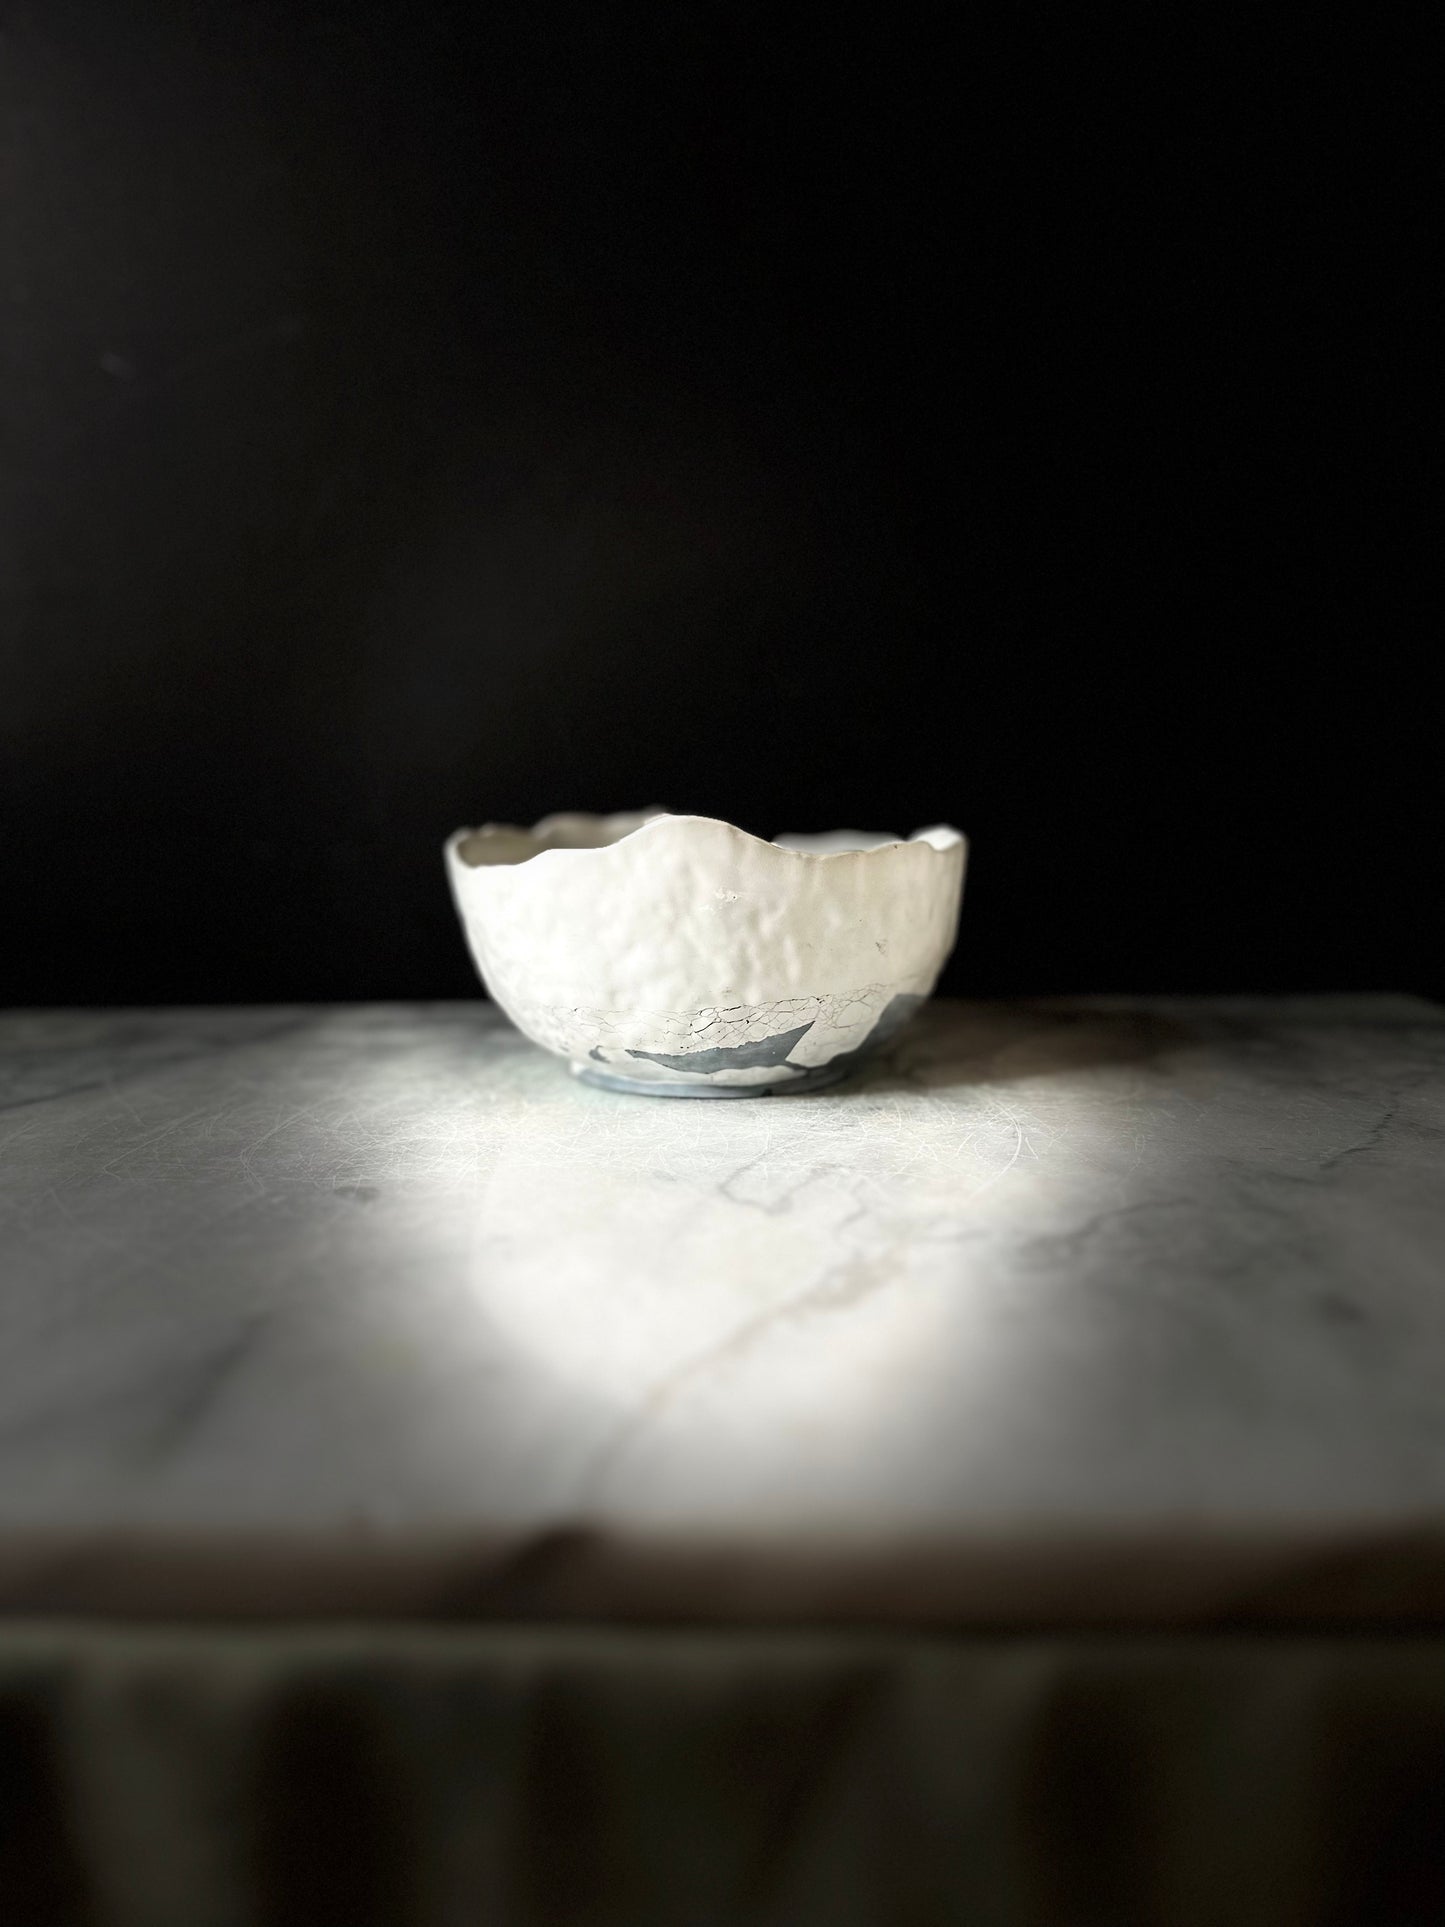 Ben Bowl - Concrete bowl